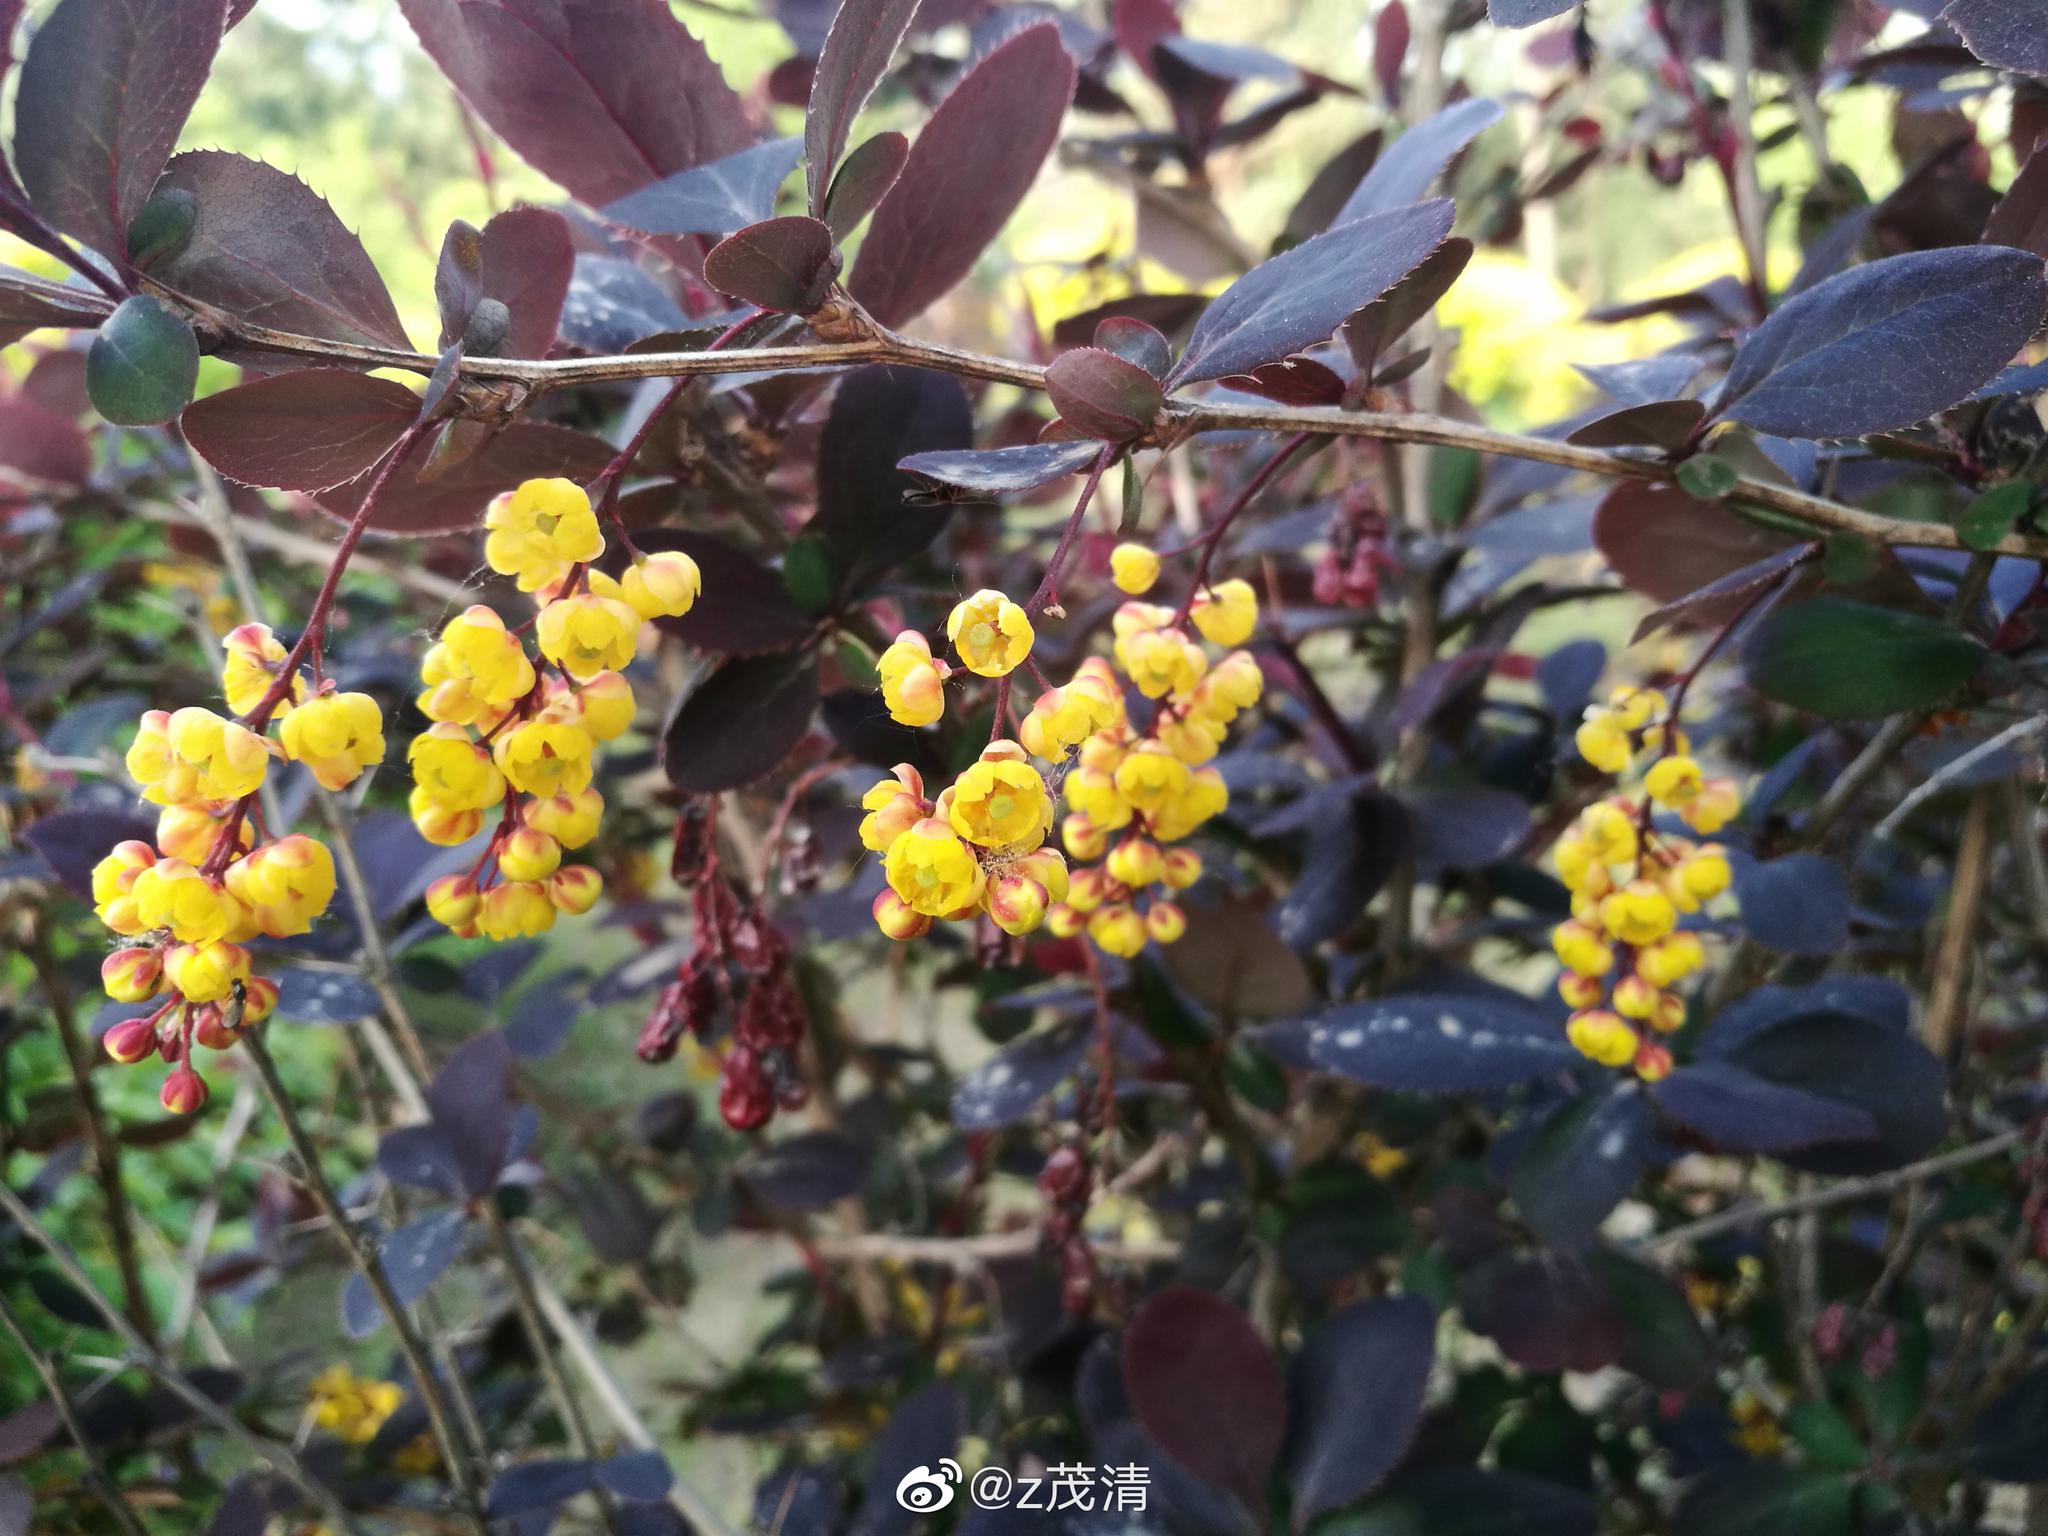 图片素材 : 花, 餐饮, 生产, 年生植物, 叶蔬菜 3120x4160 - - 120635 - 素材中国, 高清壁纸 - PxHere摄影图库